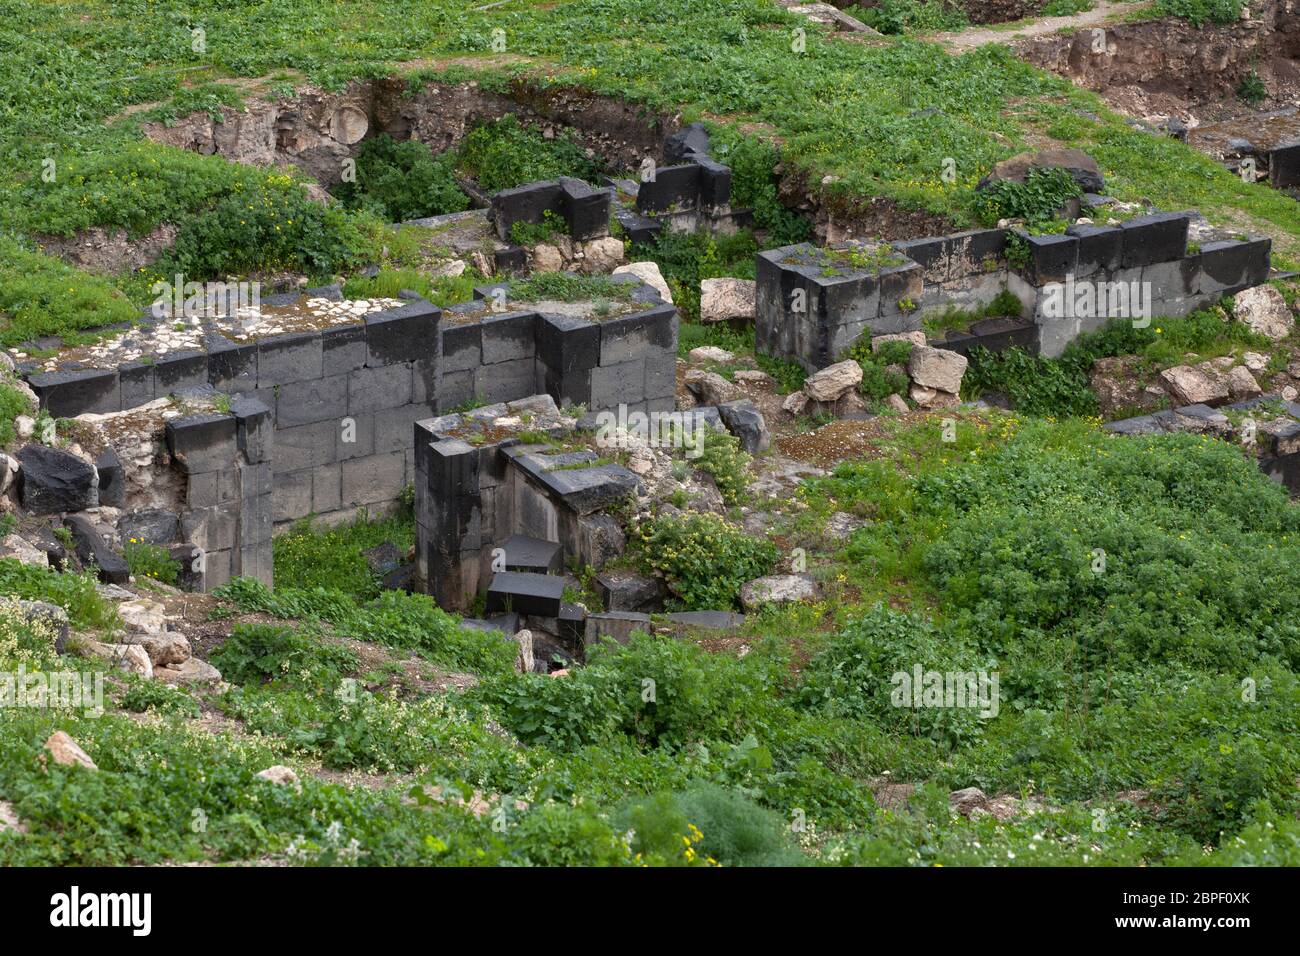 Ruines de la structure de basalte dans l'ancienne Gadara ou Gedaris également connu sous le nom d'Umm Qais ou Qays dans le nord-ouest de la Jordanie Banque D'Images